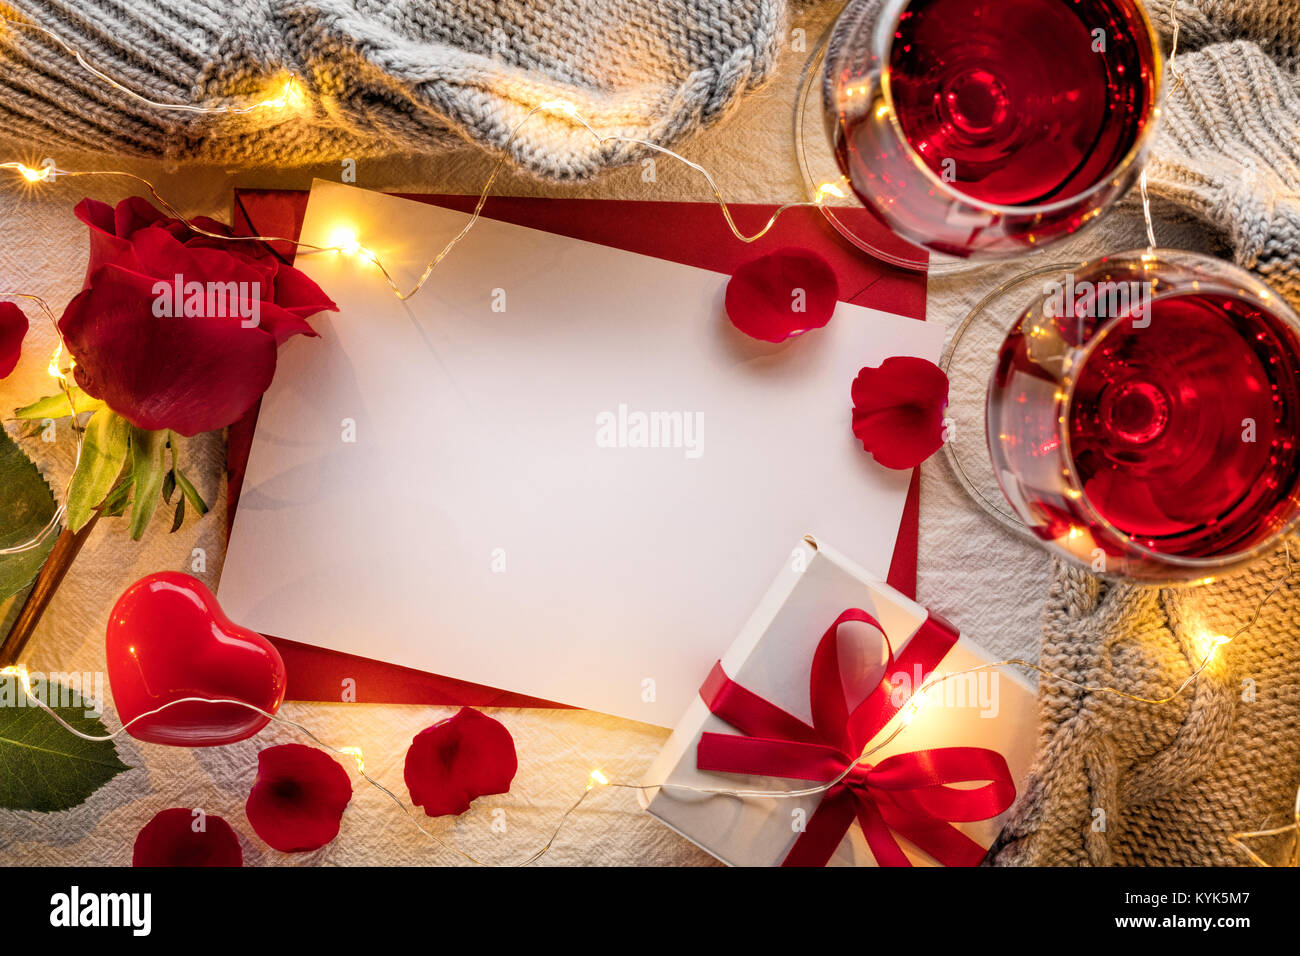 Celebración del Día de San Valentín con vino tinto,rose y tarjeta Foto de stock